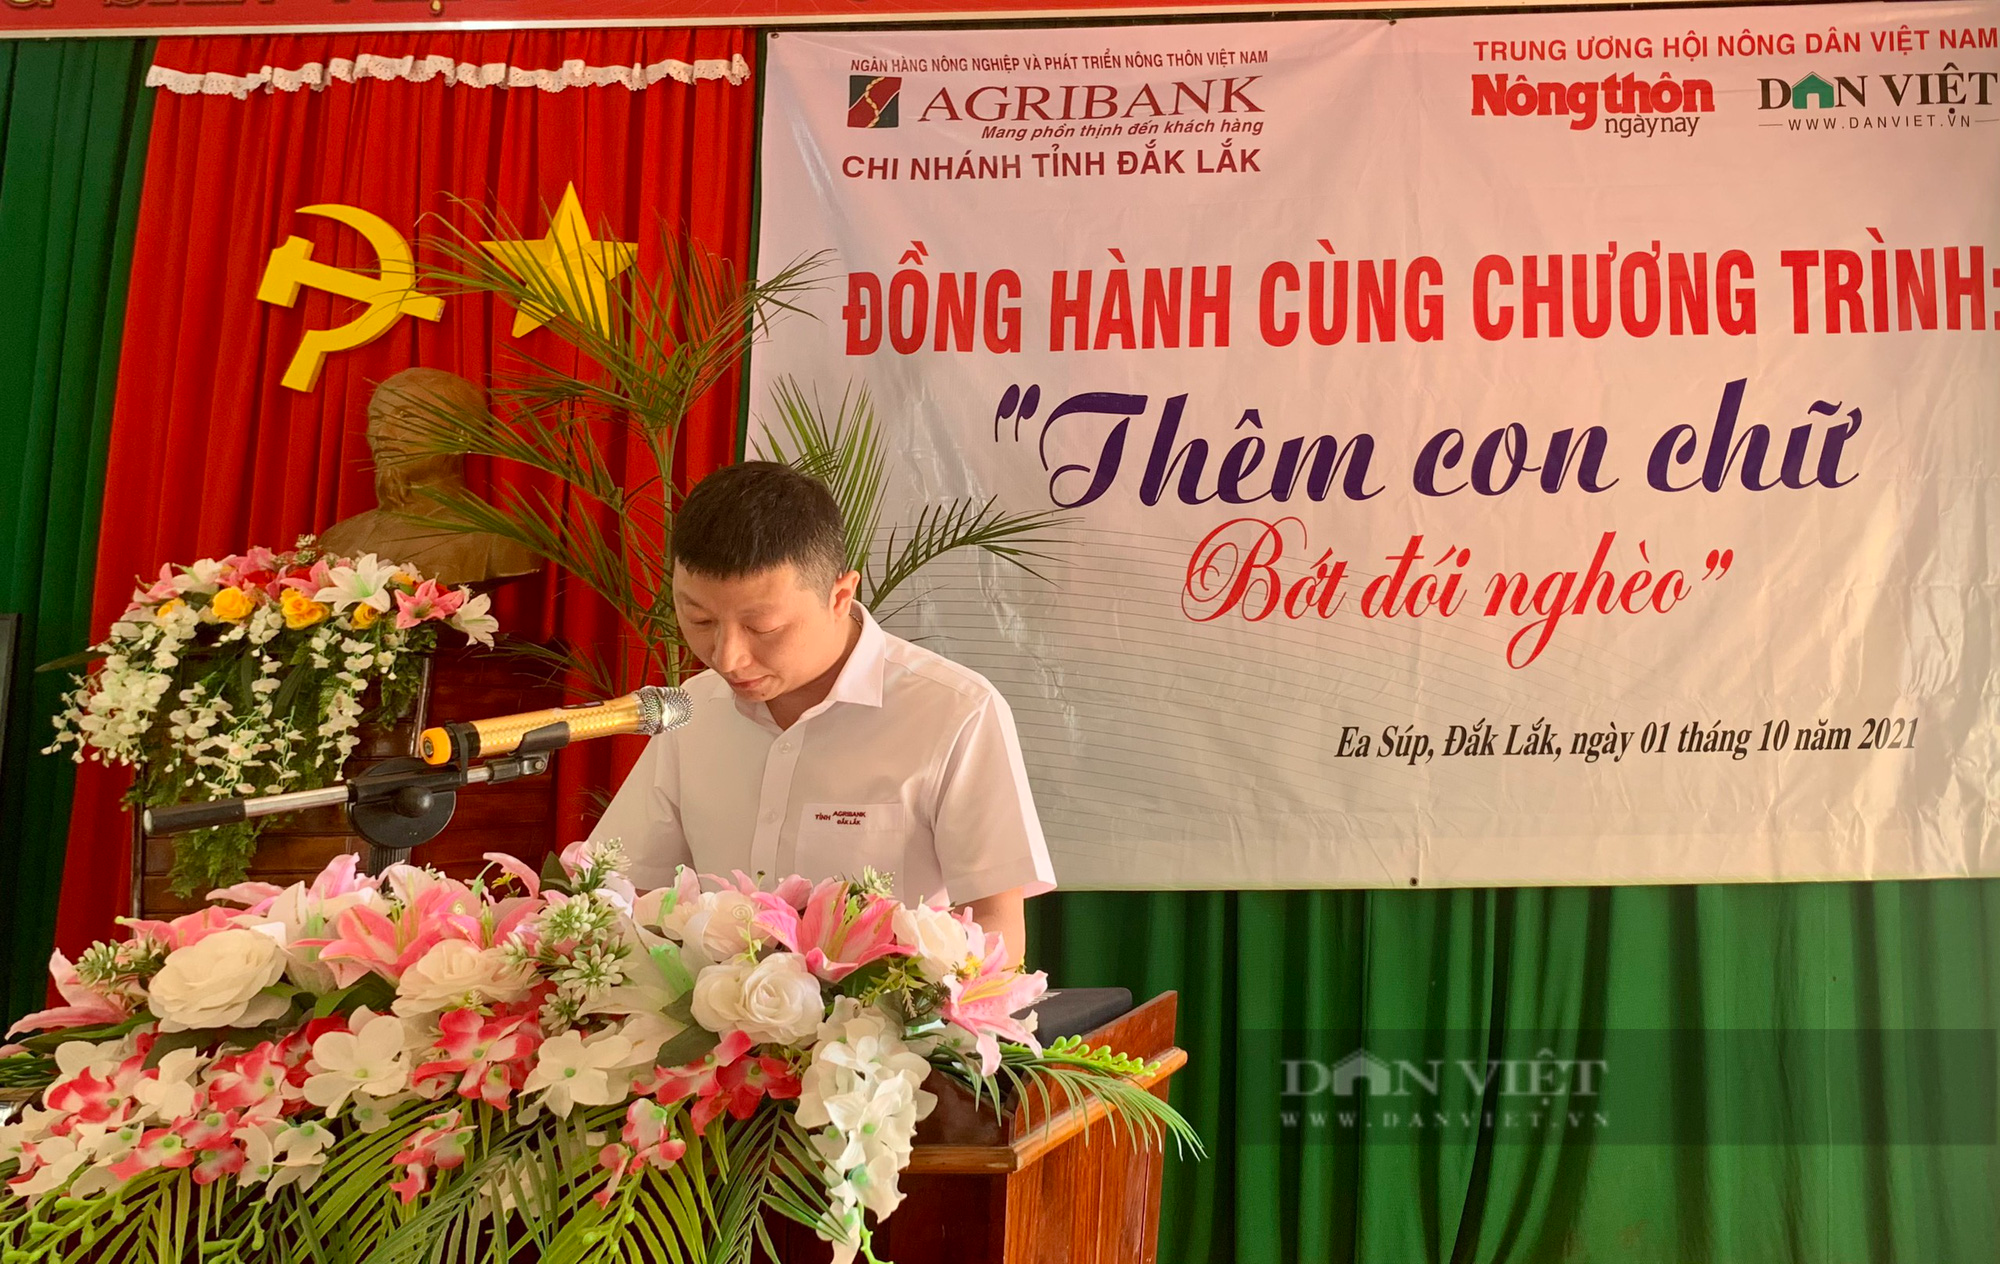 Báo Dân Việt cùng Agribank Đắk Lắk với chương trình “Thêm con chữ, bớt đói nghèo” - Ảnh 1.